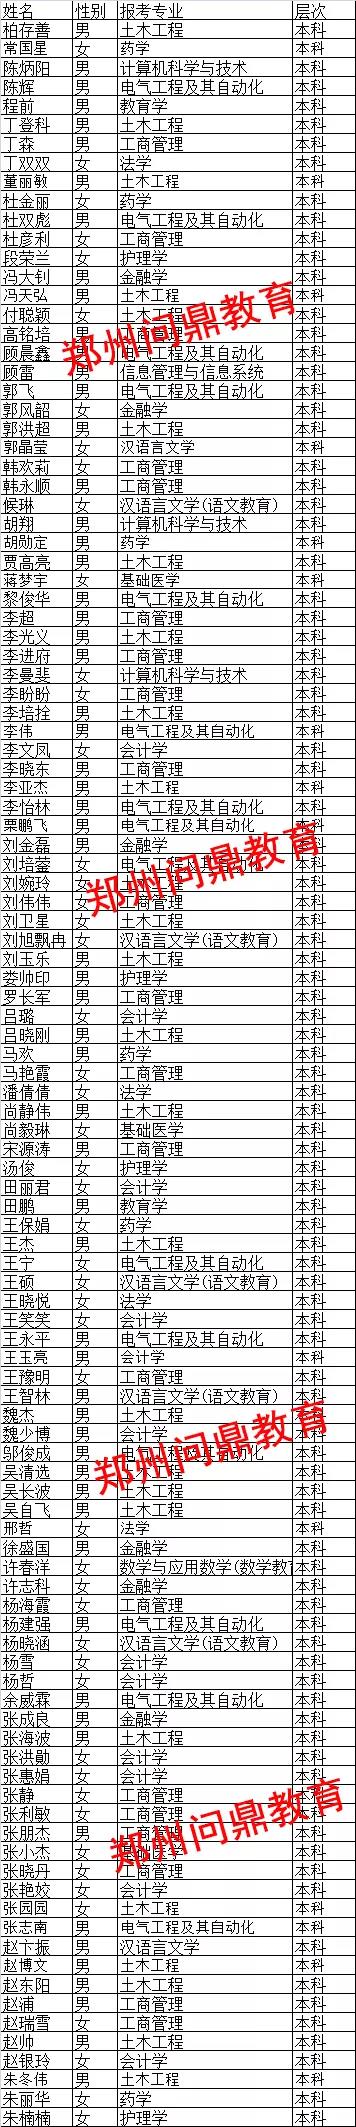 郑州市的大学远程教育毕业典礼名单.jpg